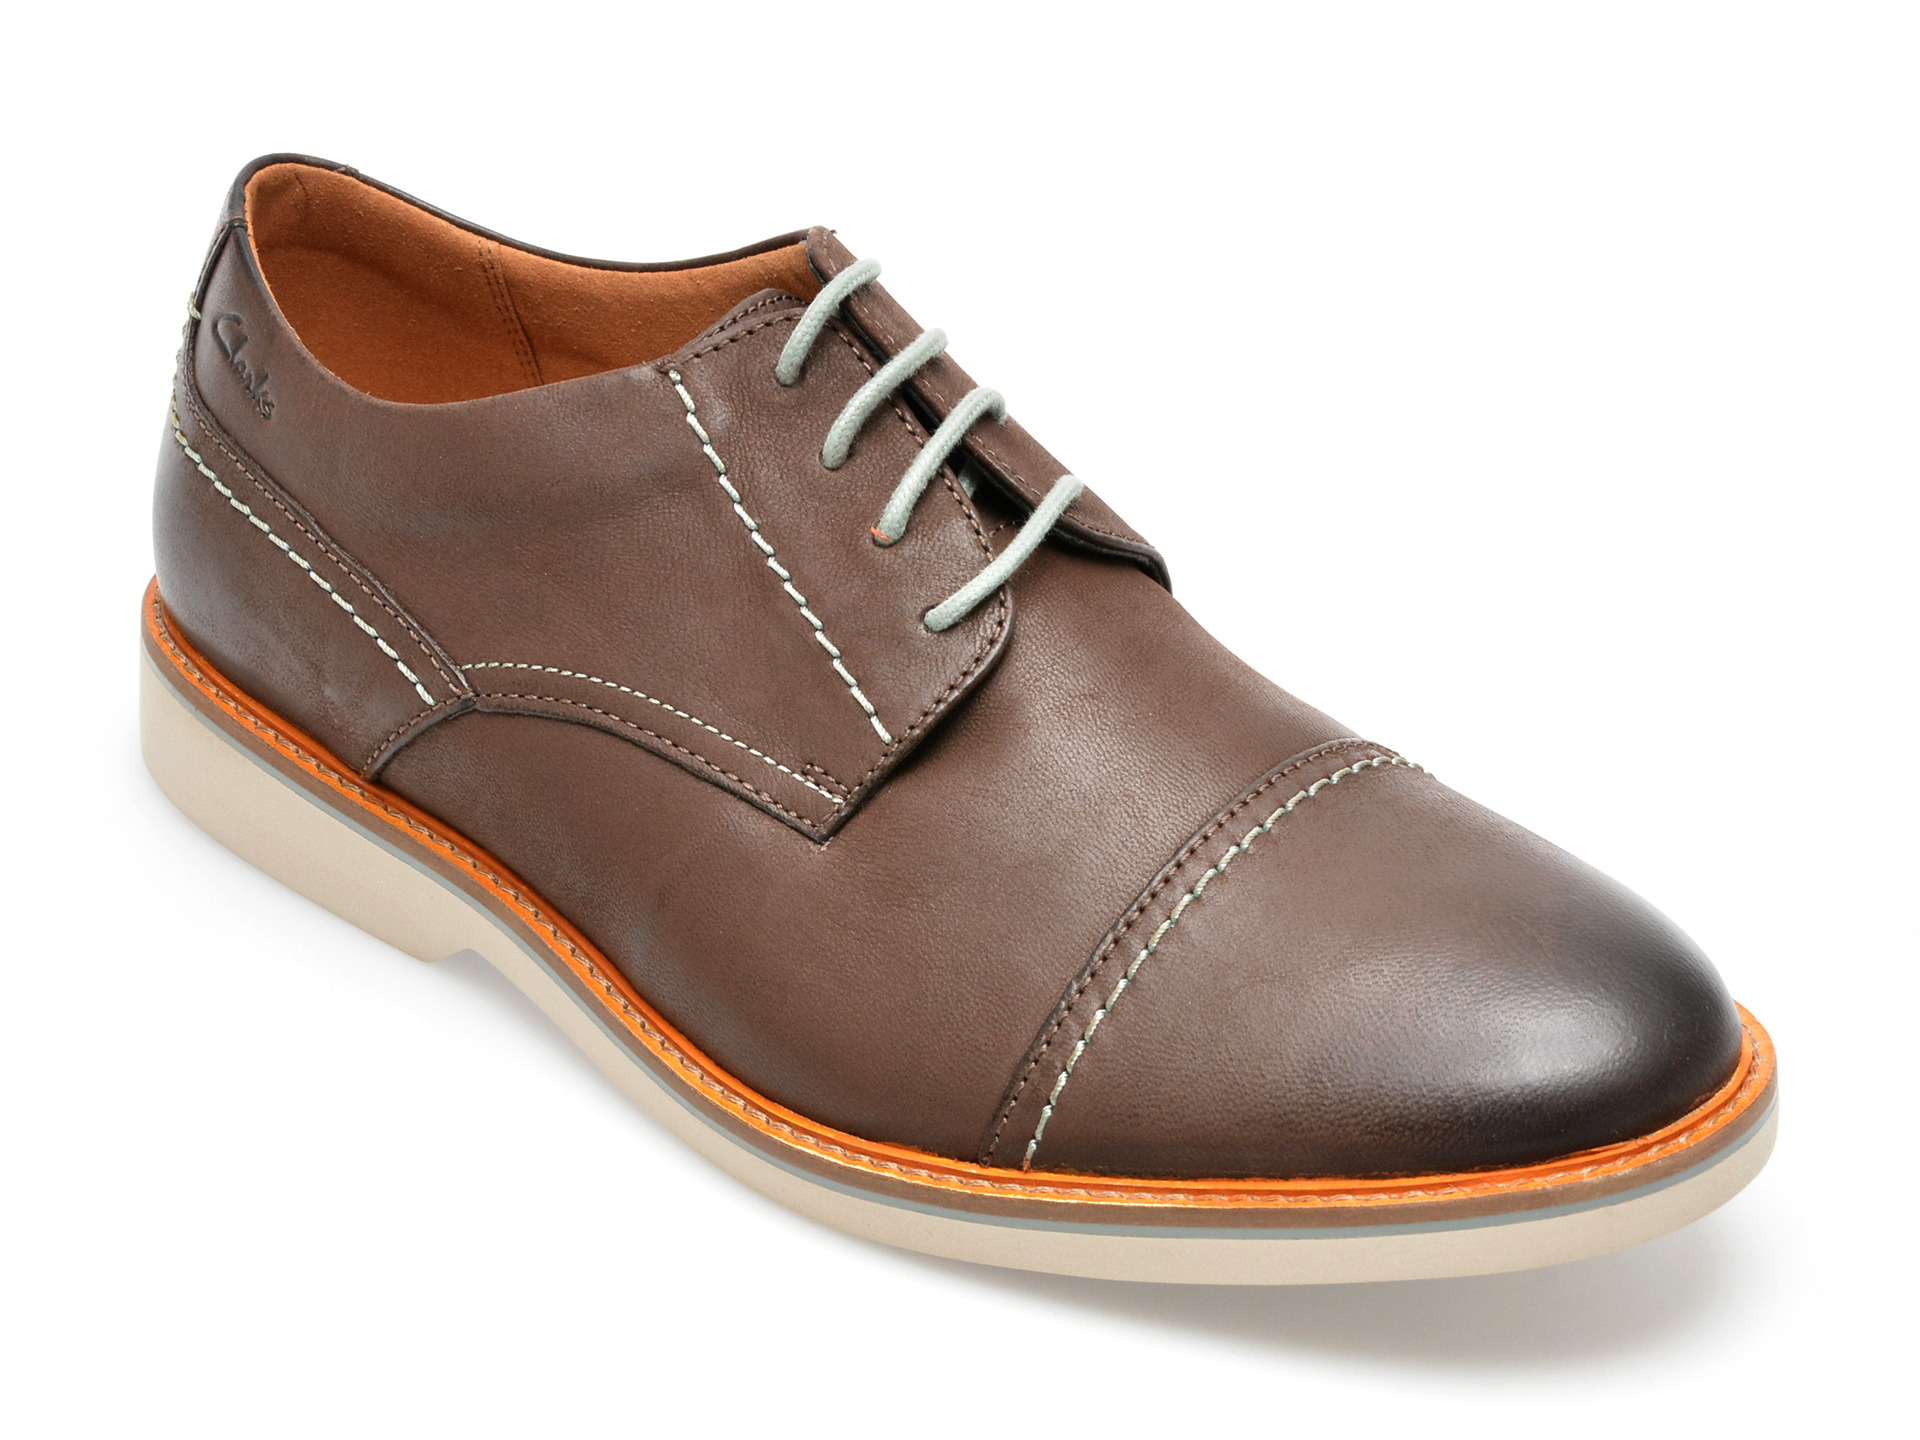 Pantofi CLARKS maro, ATTICUS LT CAP 0912, din piele naturala imagine reduceri black friday 2021 Clarks